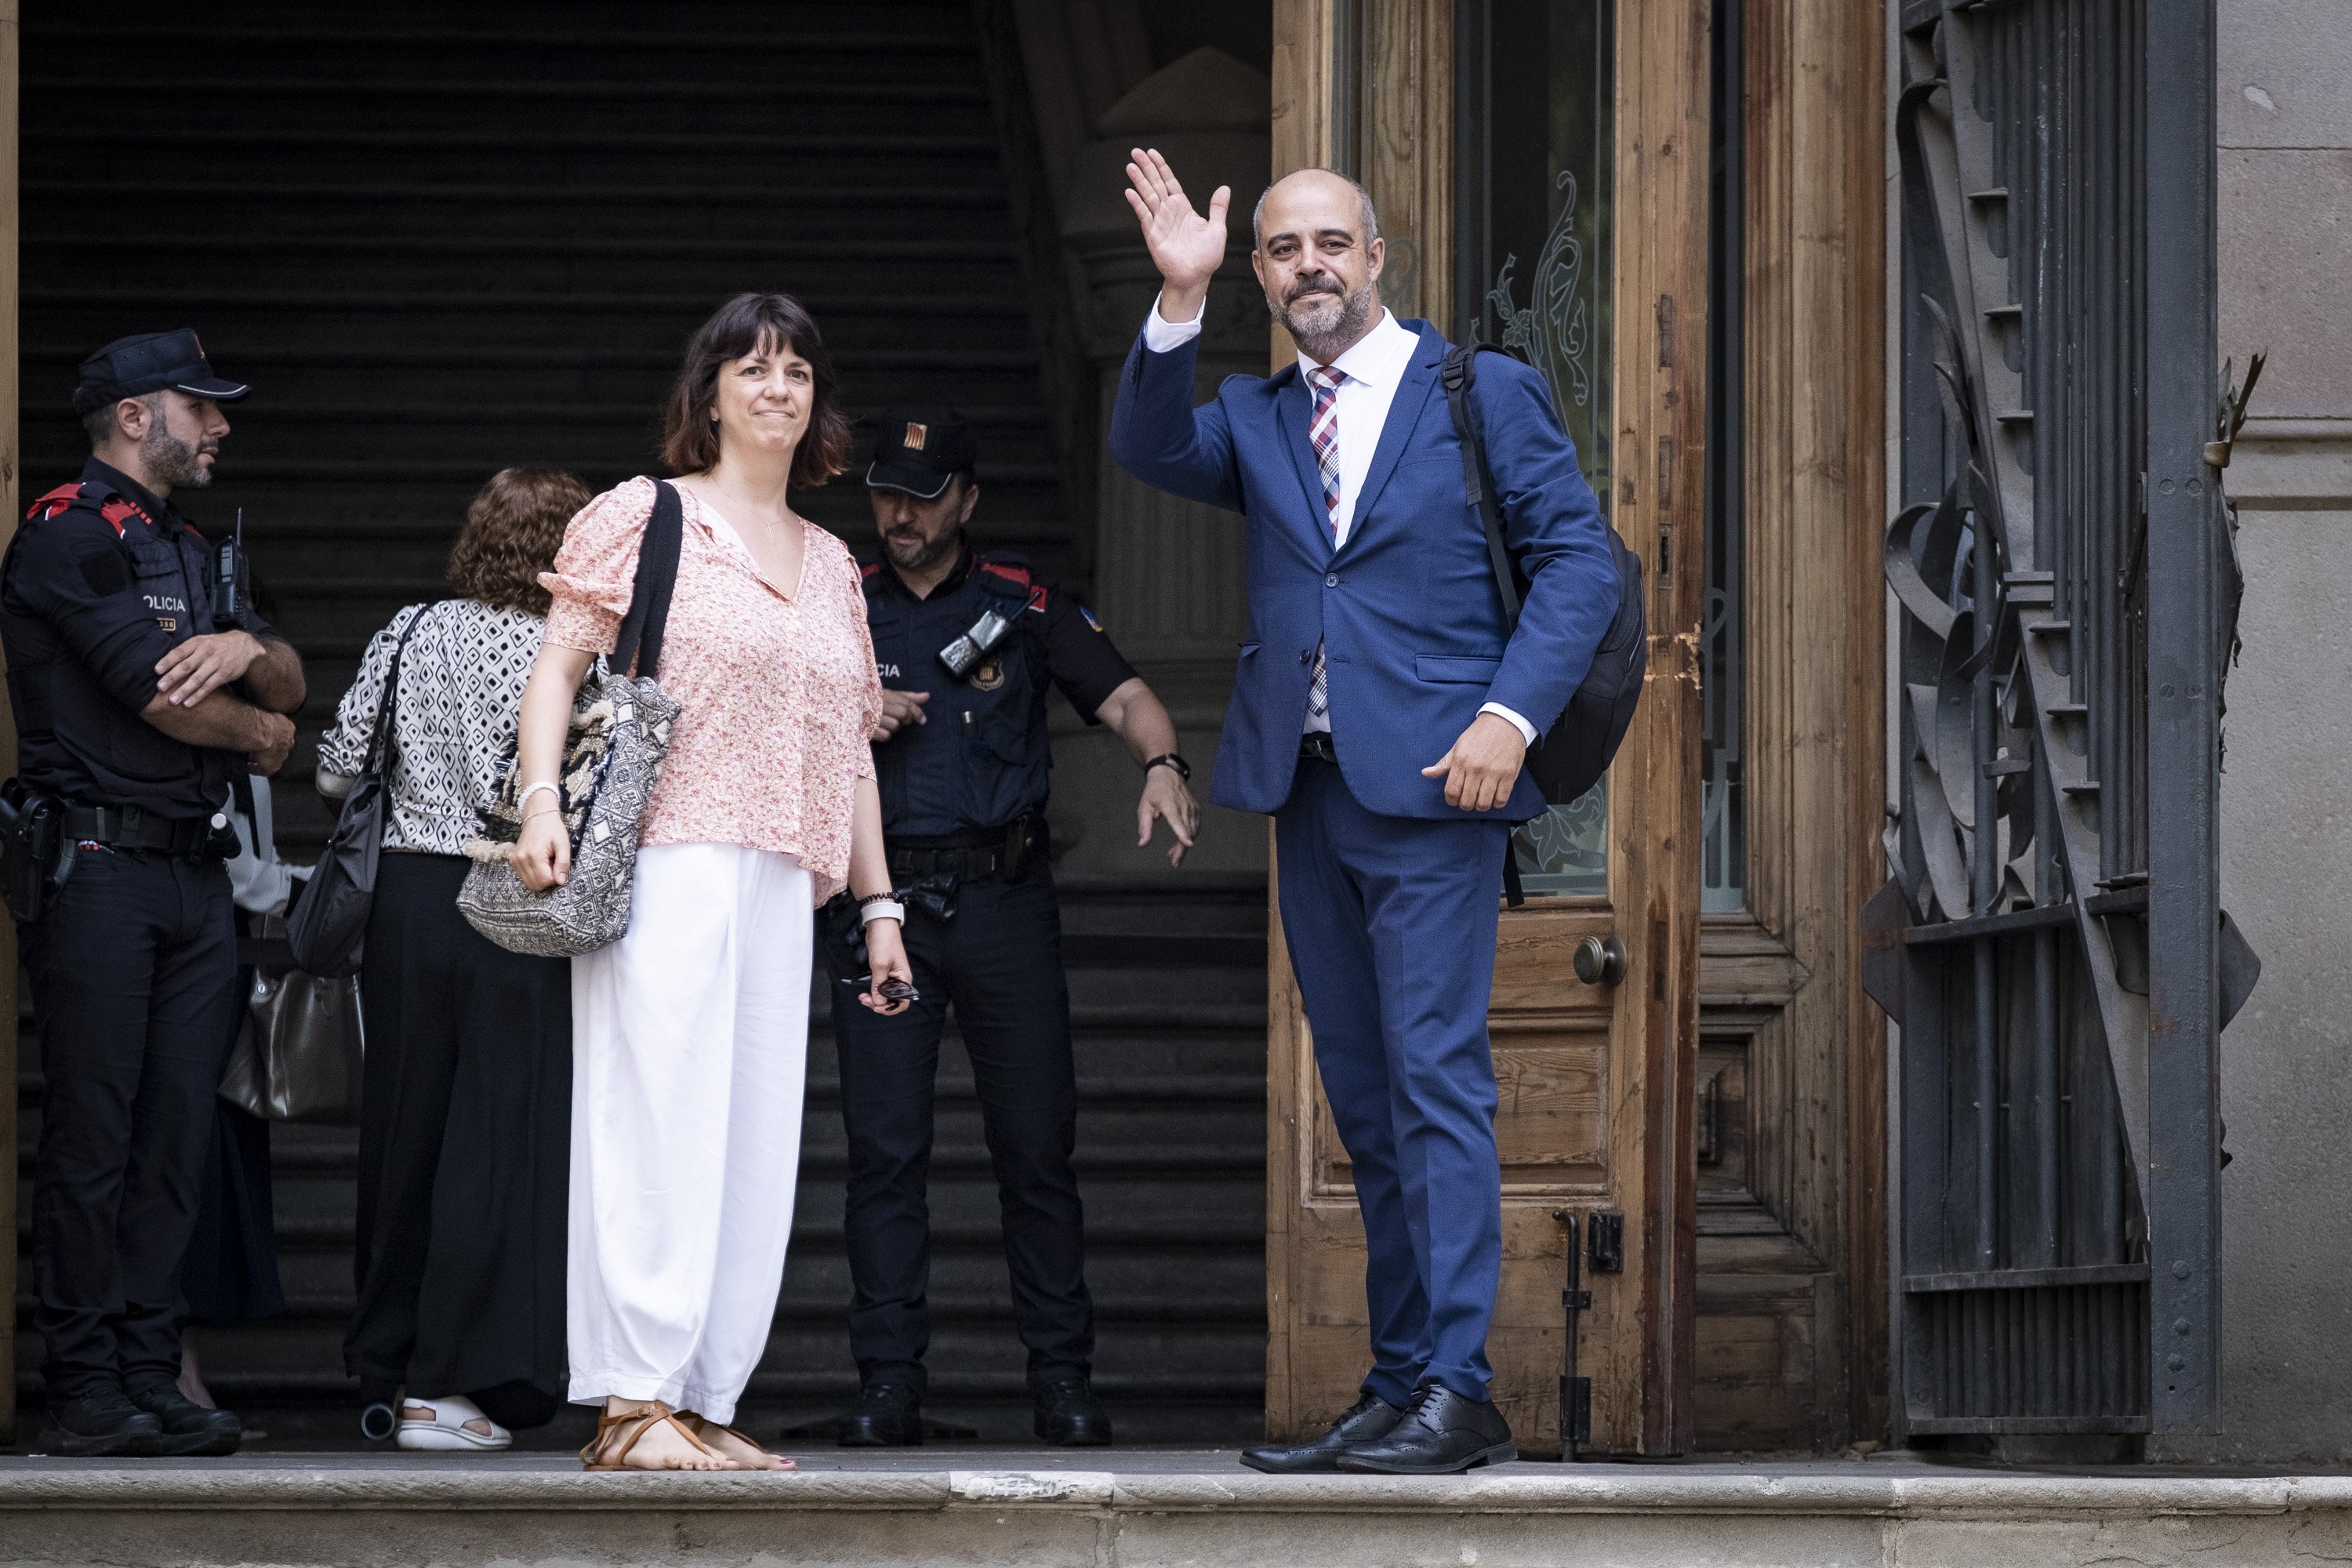 L'Audiència de Barcelona condemna Miquel Buch a 4 anys i mig de presó per l'escorta de Puigdemont